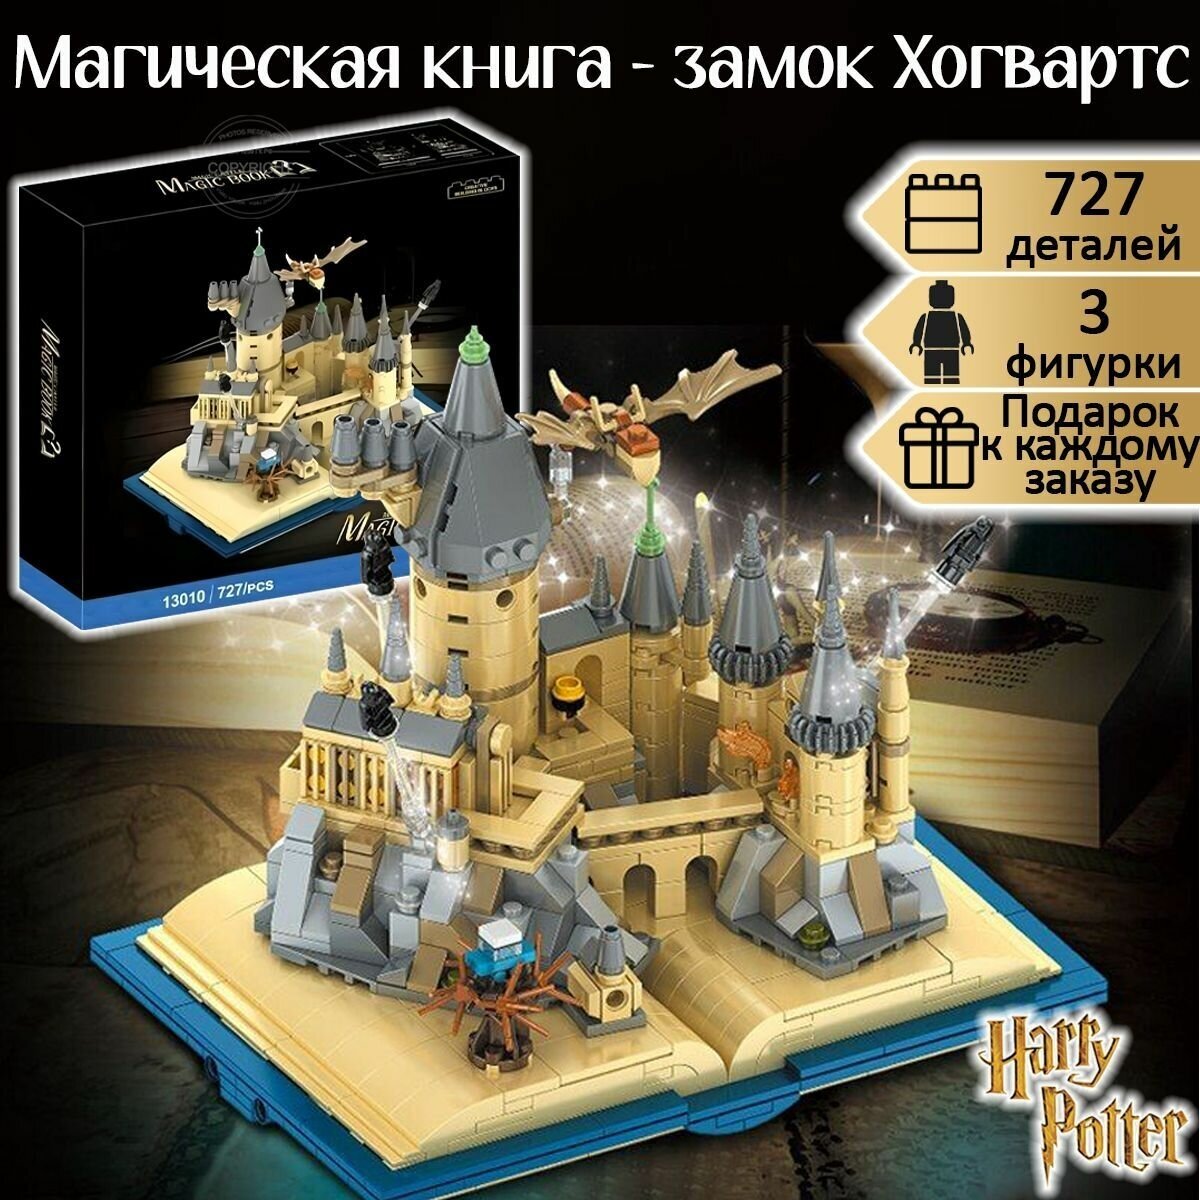 Конструктор Гарри Поттер Магическая книга - замок Хогвартс, 727 деталей / набор для детей / школа волшебников / совместим со всеми конструкторами